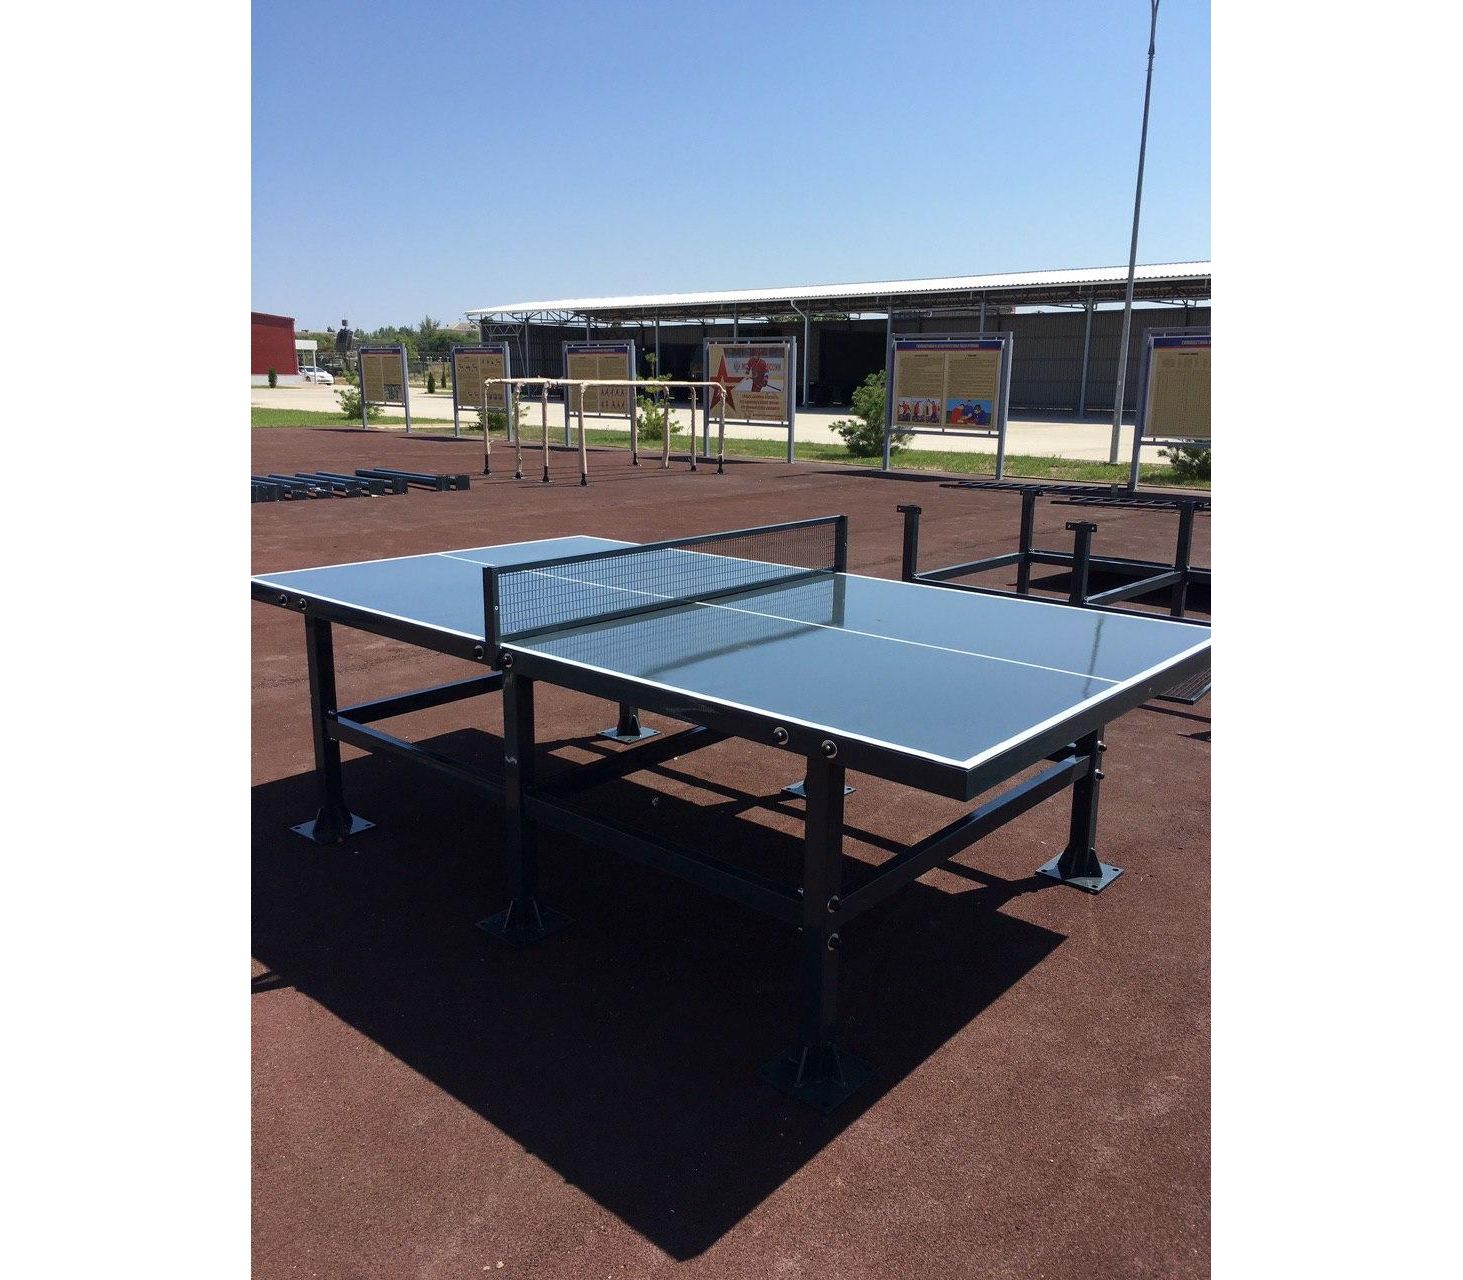 Теннисный стол City strong Outdoor - бетонный антивандальный теннисный стол.